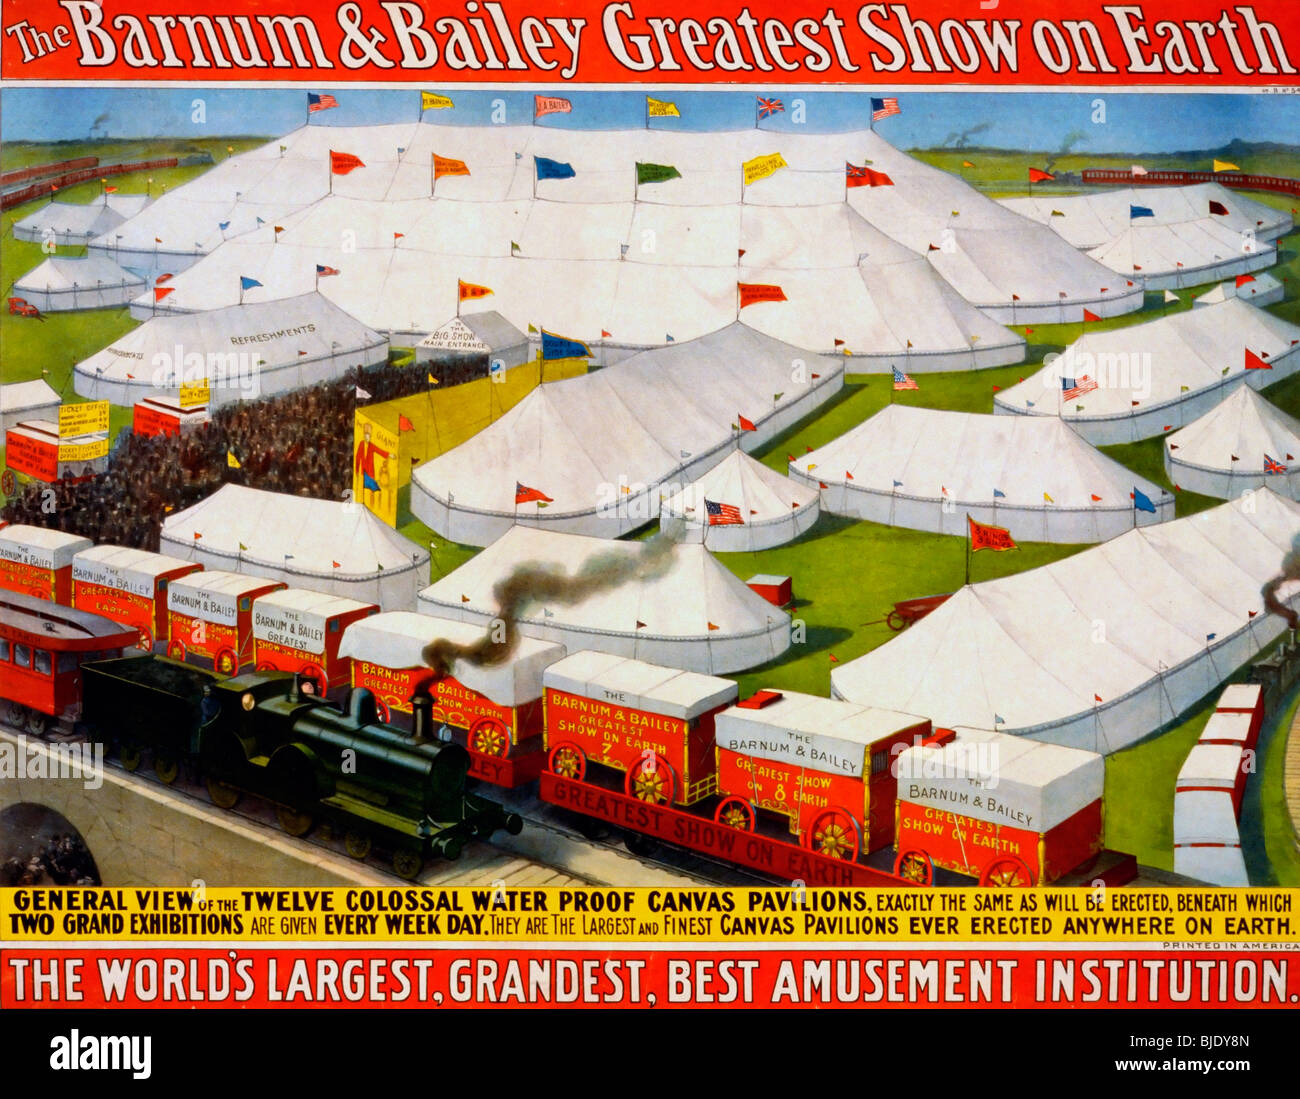 El Barnum & Bailey mayor espectáculo de la tierra, el más grande del mundo, el más grandioso, institución mejor entretenimiento - 1899 Poster Foto de stock